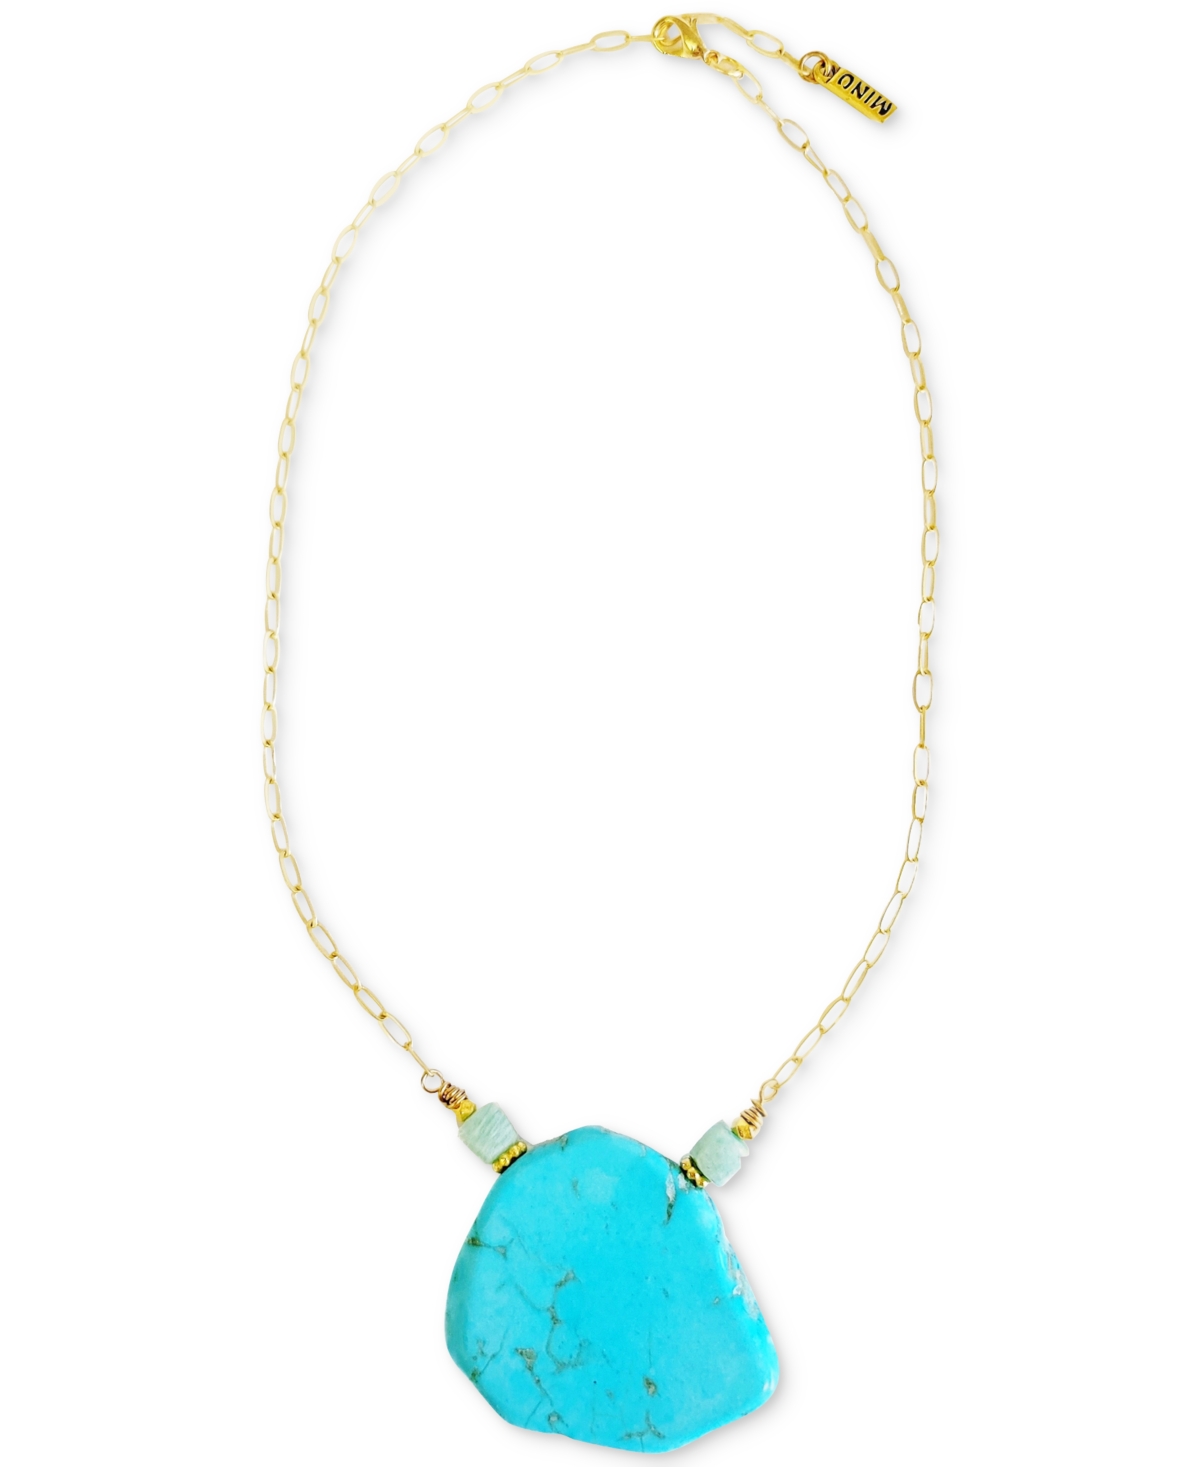 Gold-Tone Turquoise & Amazonite 16" Pendant Necklace - Gold Turquoise